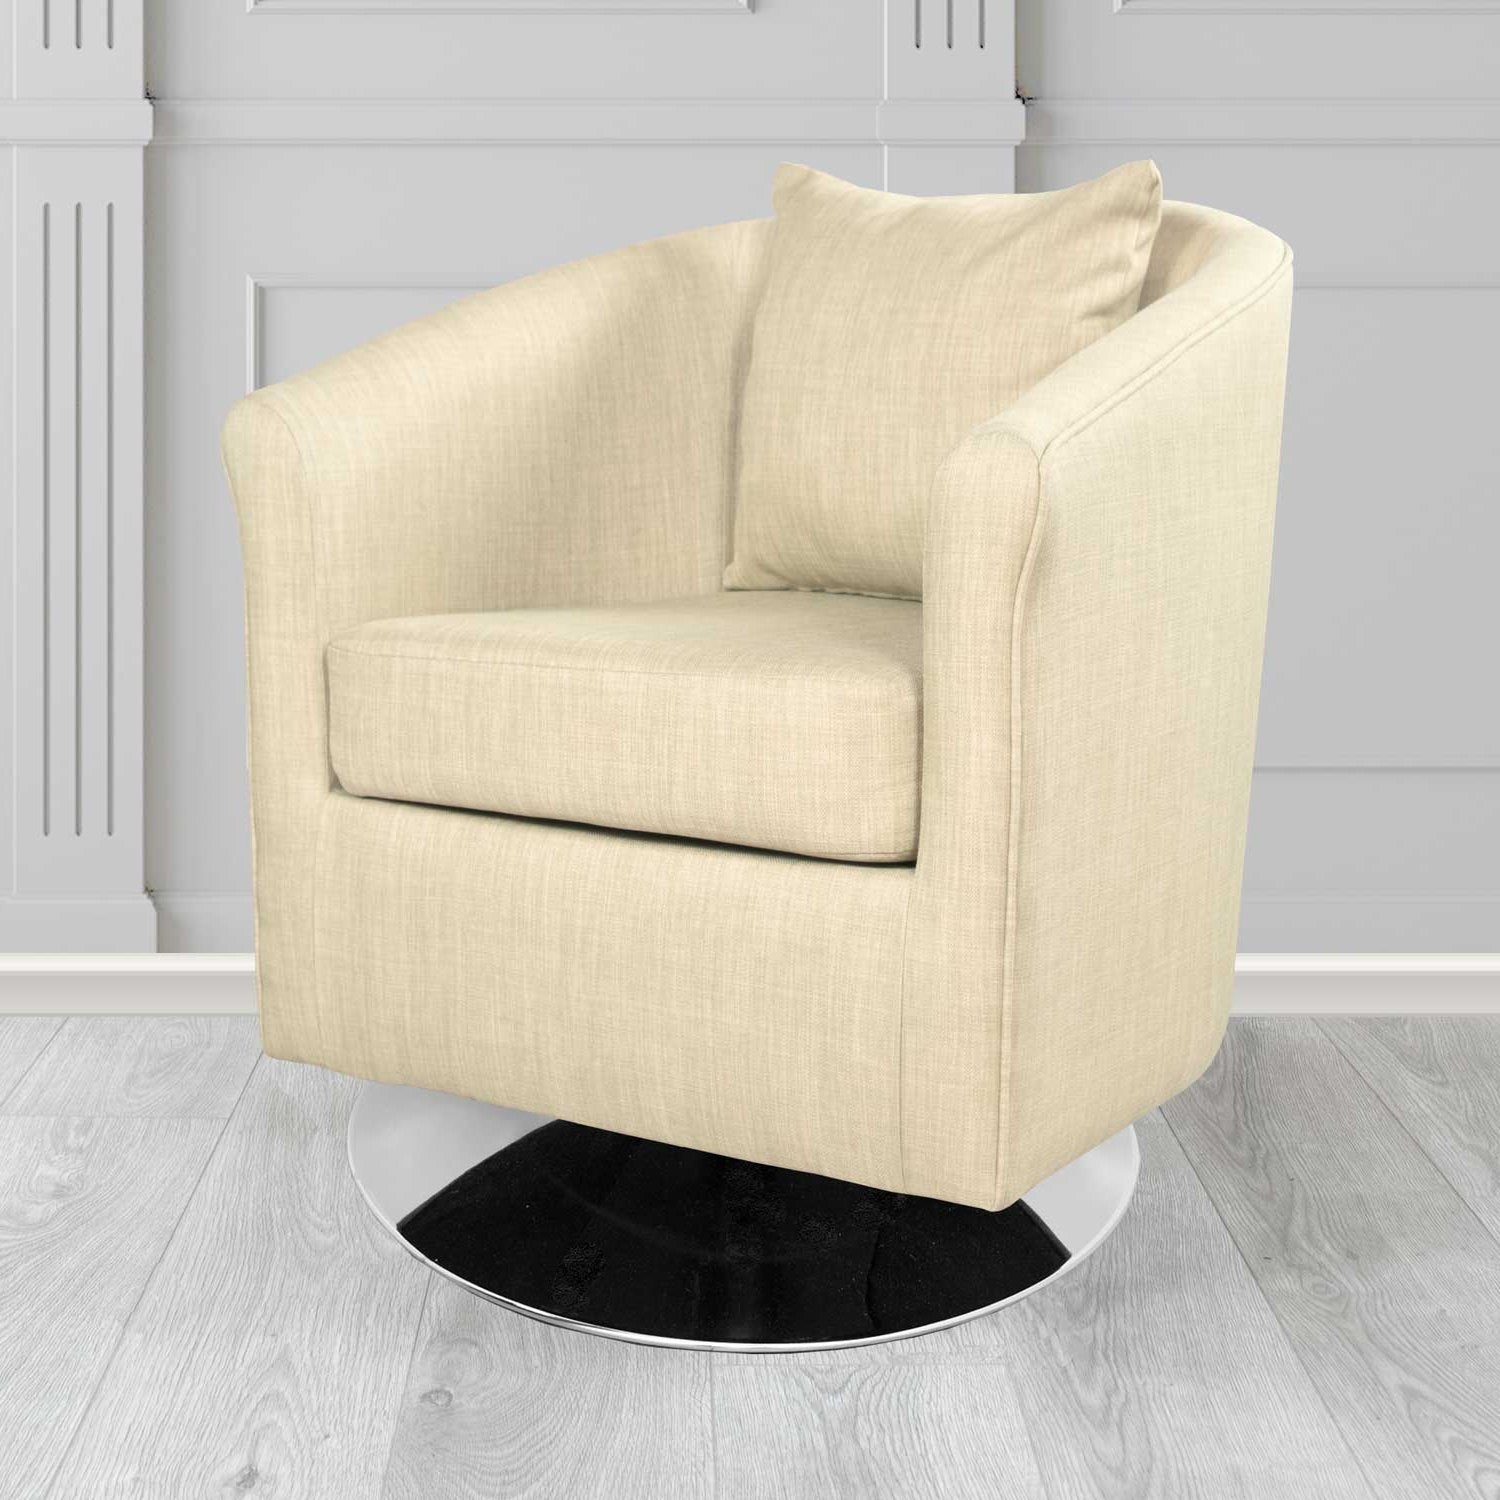 St Tropez Charles Cream Plain Linen Fabric Swivel Tub Chair - The Tub Chair Shop